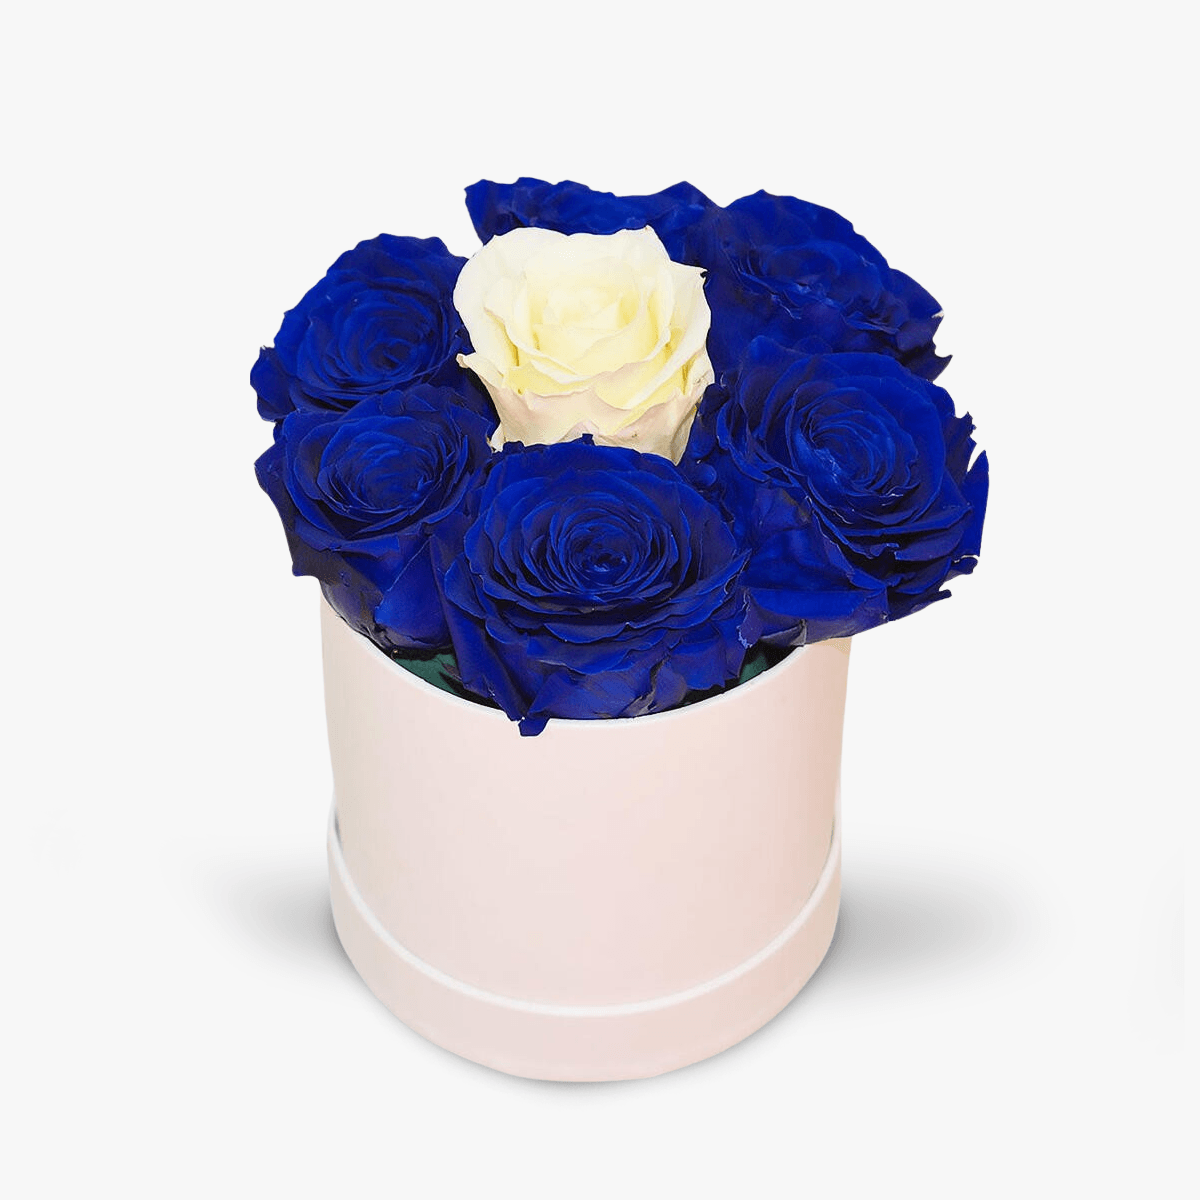 Cutie cu 7 trandafiri, albastri si albi, criogenati – Standard albastri imagine 2022